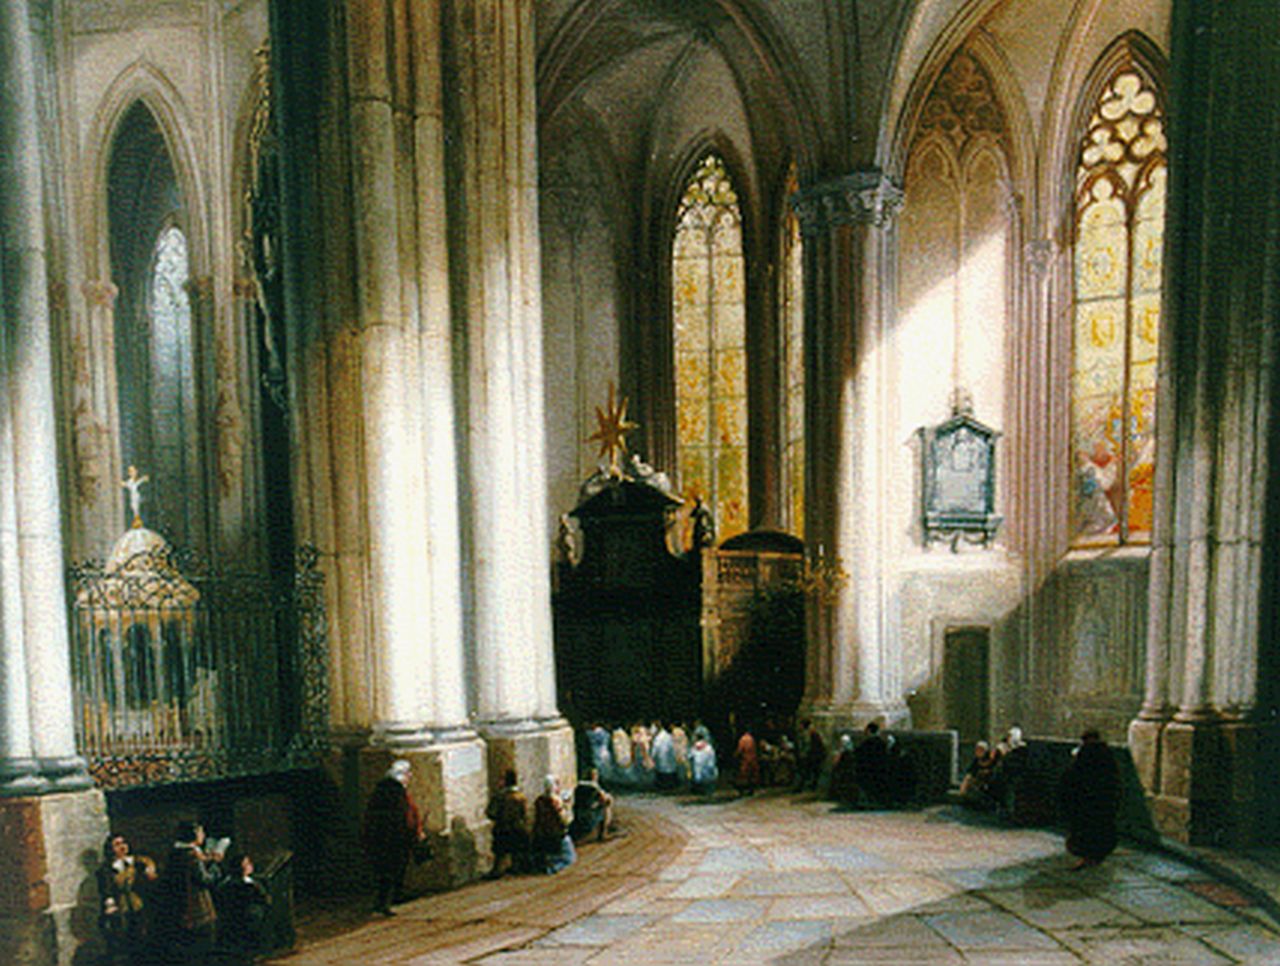 Tetar van Elven J.B.  | Jan 'Johannes' Baptist Tetar van Elven, Kerkinterieur, olieverf op paneel 39,8 x 50,5 cm, gesigneerd rechtsonder initialen